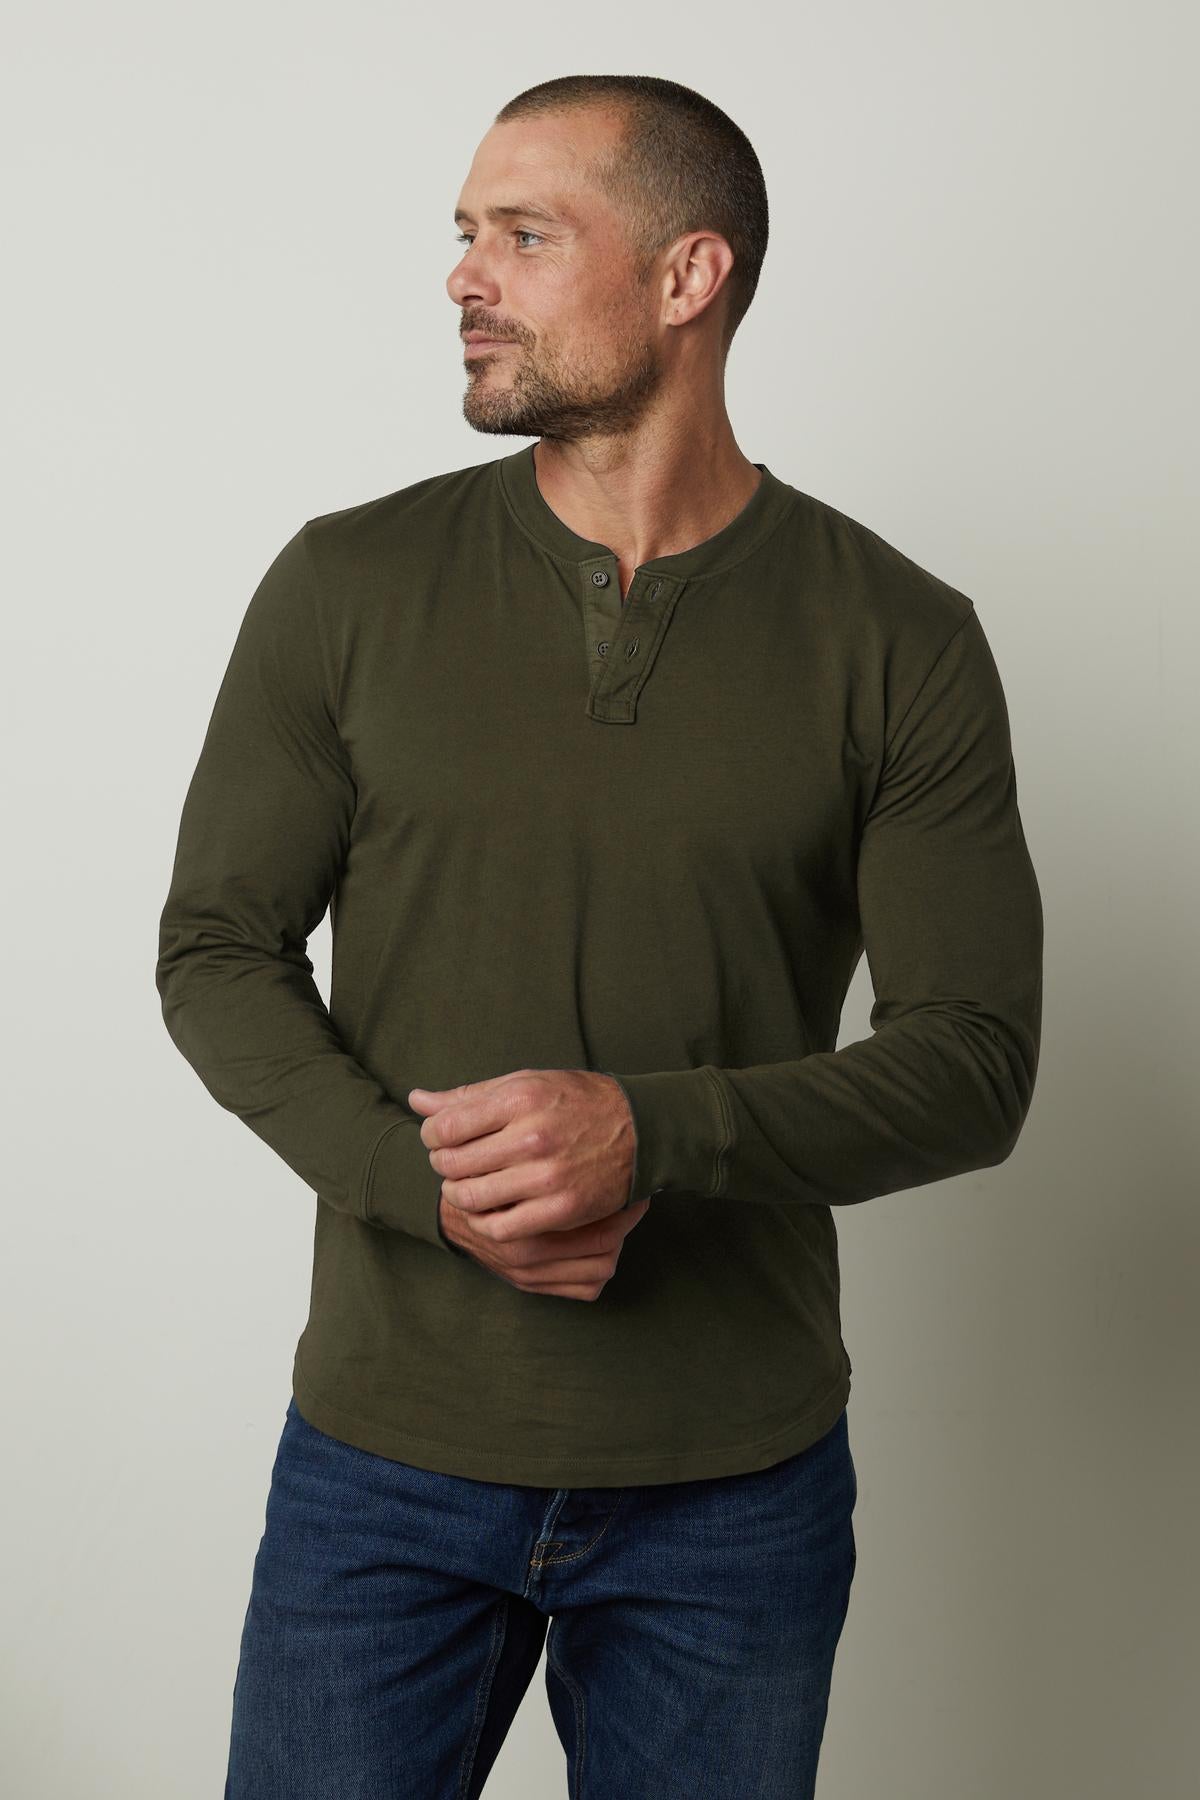 A man wearing a lightweight green BRADEN HENLEY t-shirt made of cotton fabric by Velvet by Graham & Spencer.-35547527020737